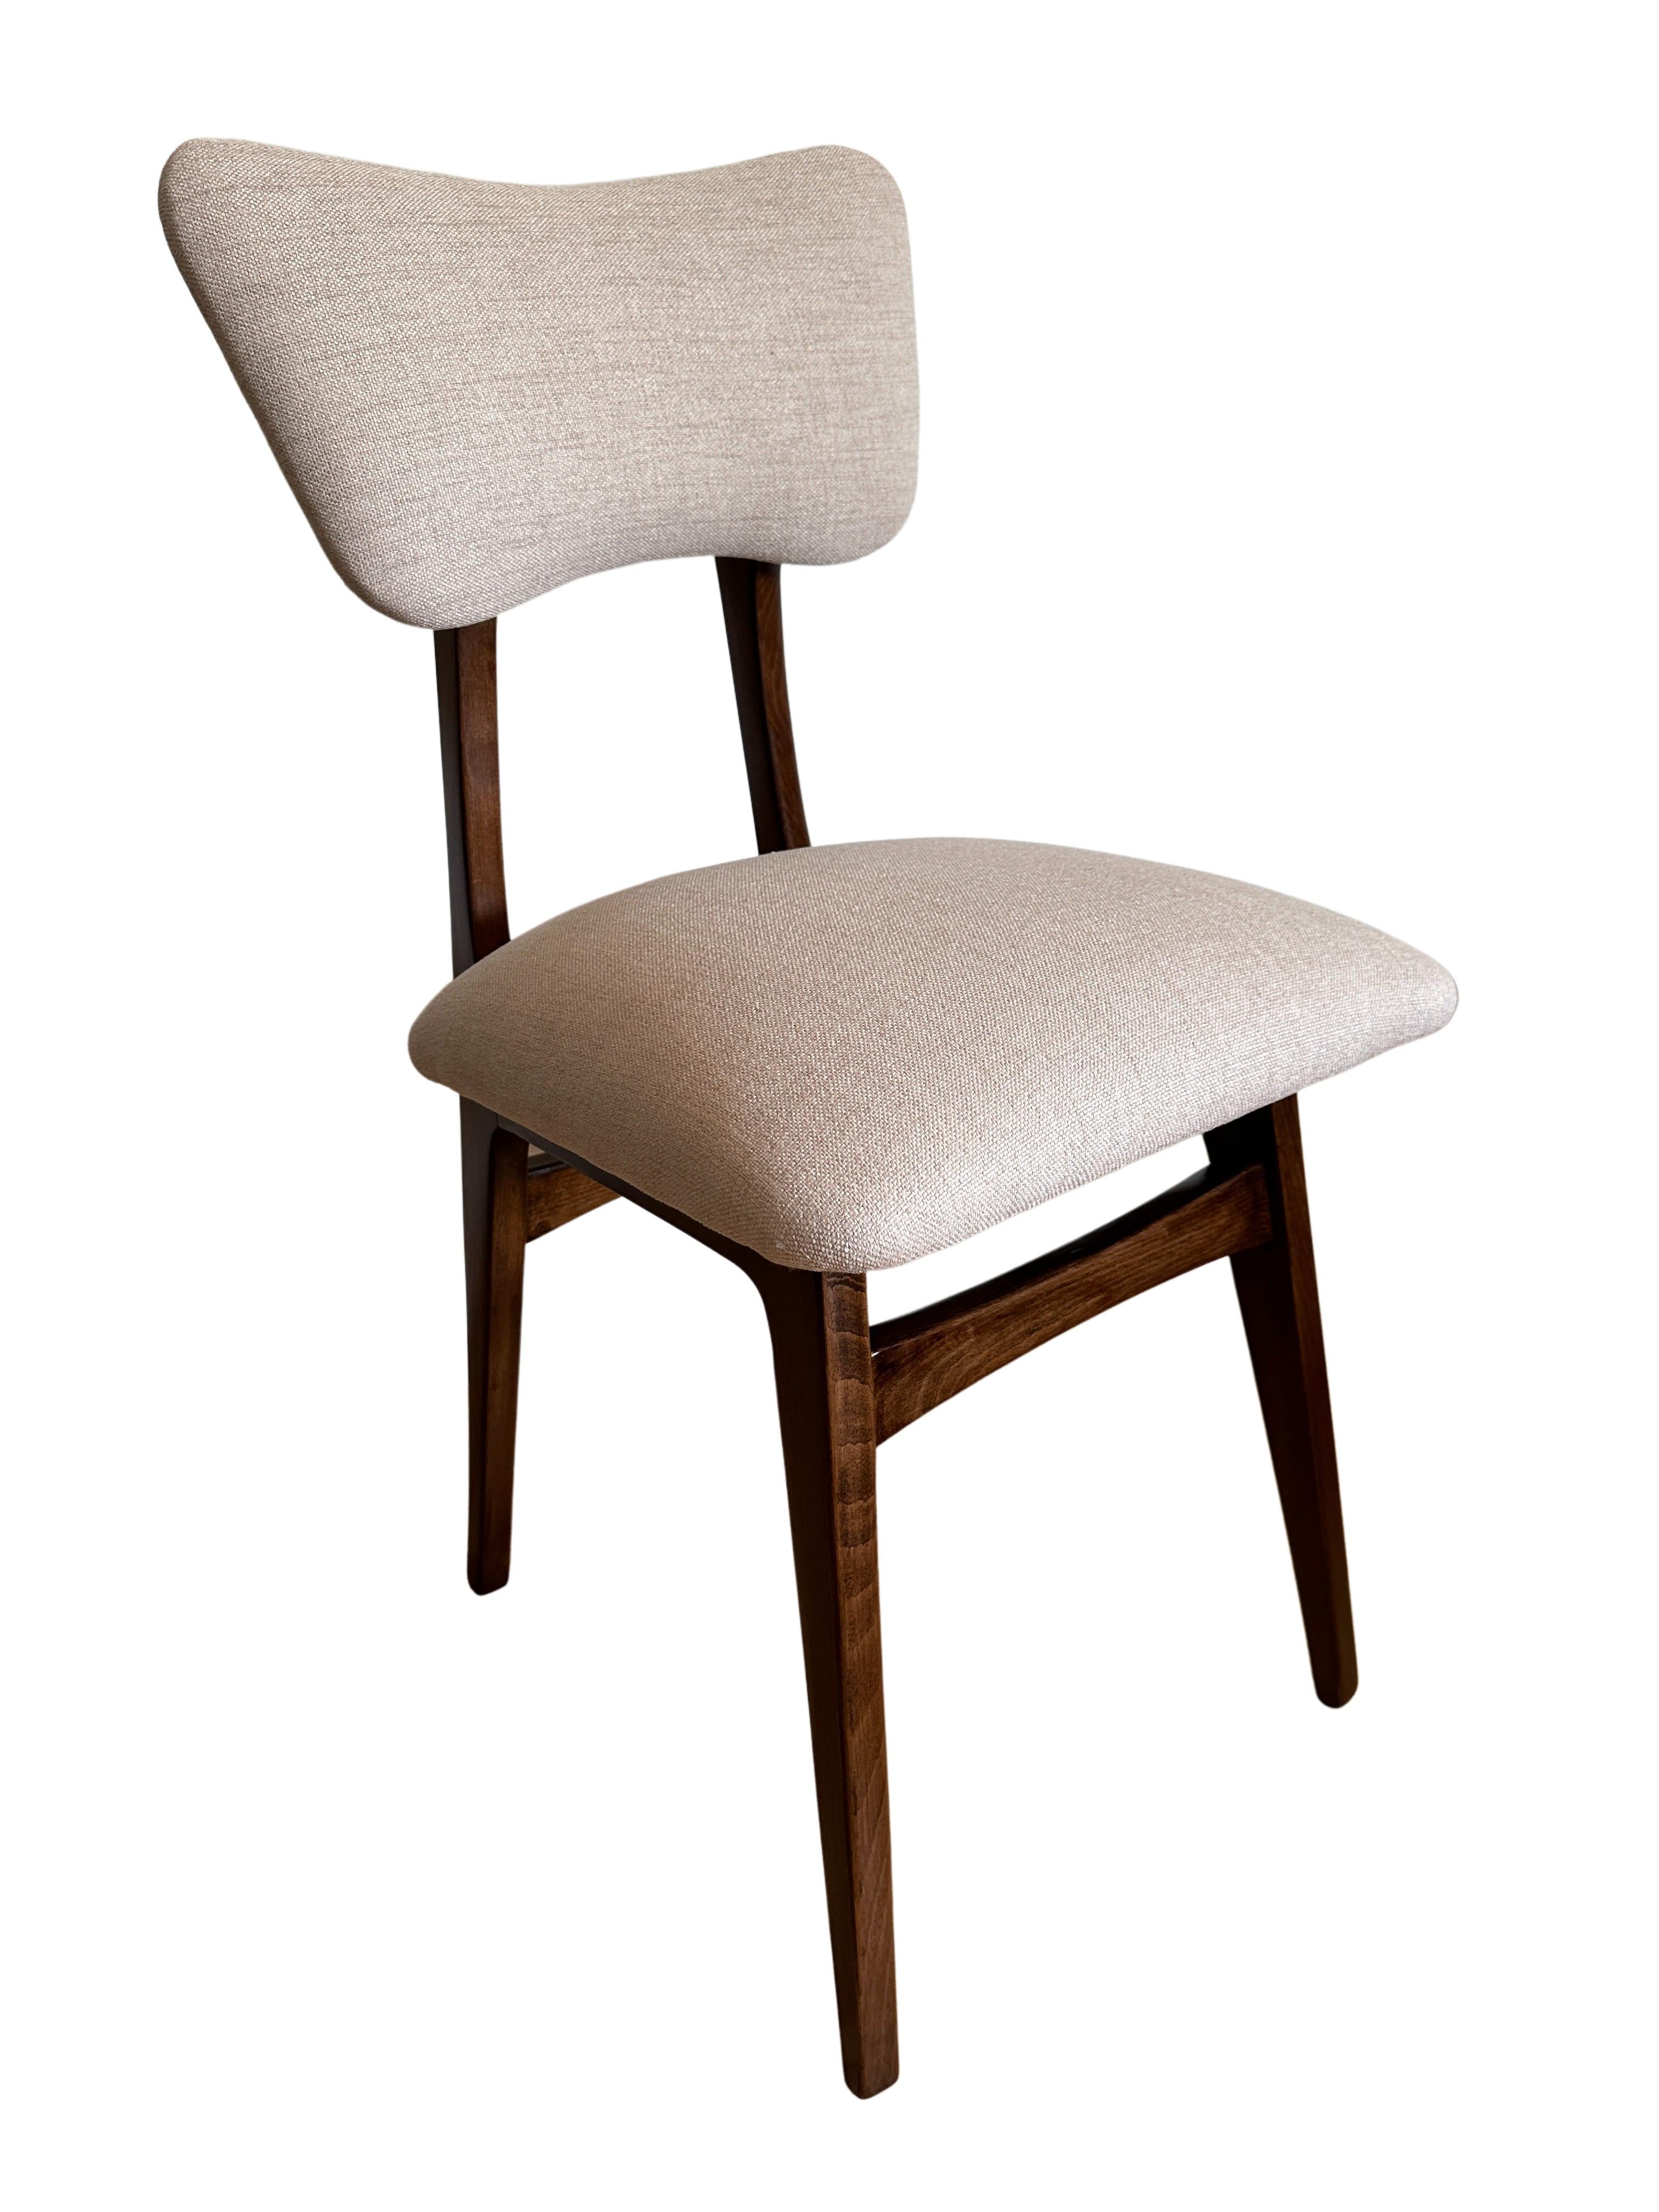 Ensemble unique de six chaises fabriquées en Pologne dans les années 1960, conçues par Rajmund Halas. 

Le revêtement est en tissu avec une structure intéressante de toile tissée épaisse, agréable et douce au toucher. Le tissu est recouvert d'une